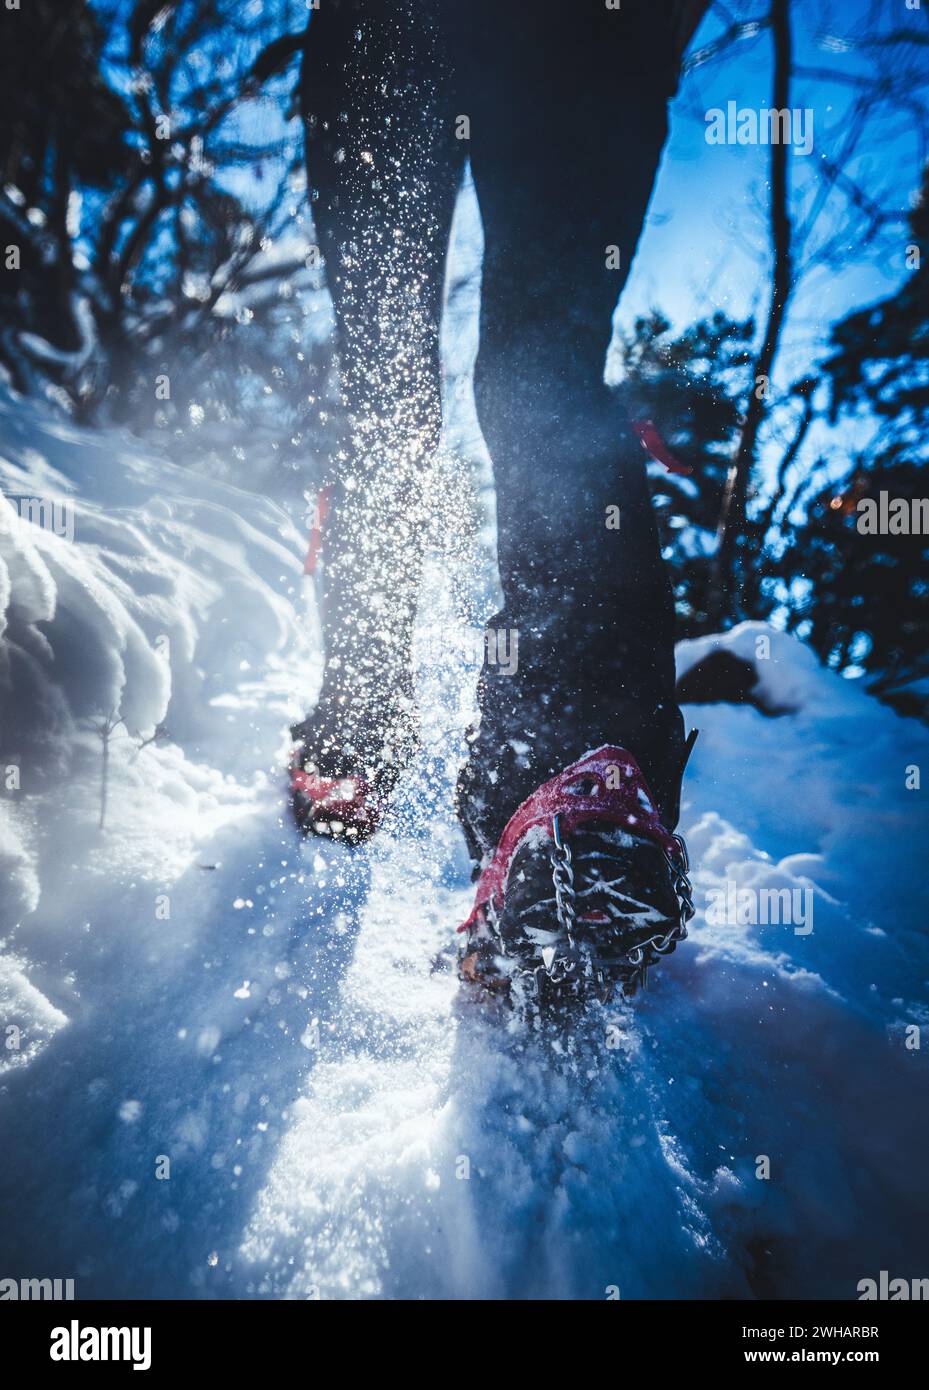 gros plan sur des chaussures avec des pointes qui poussent la neige pendant la randonnée en hiver Banque D'Images